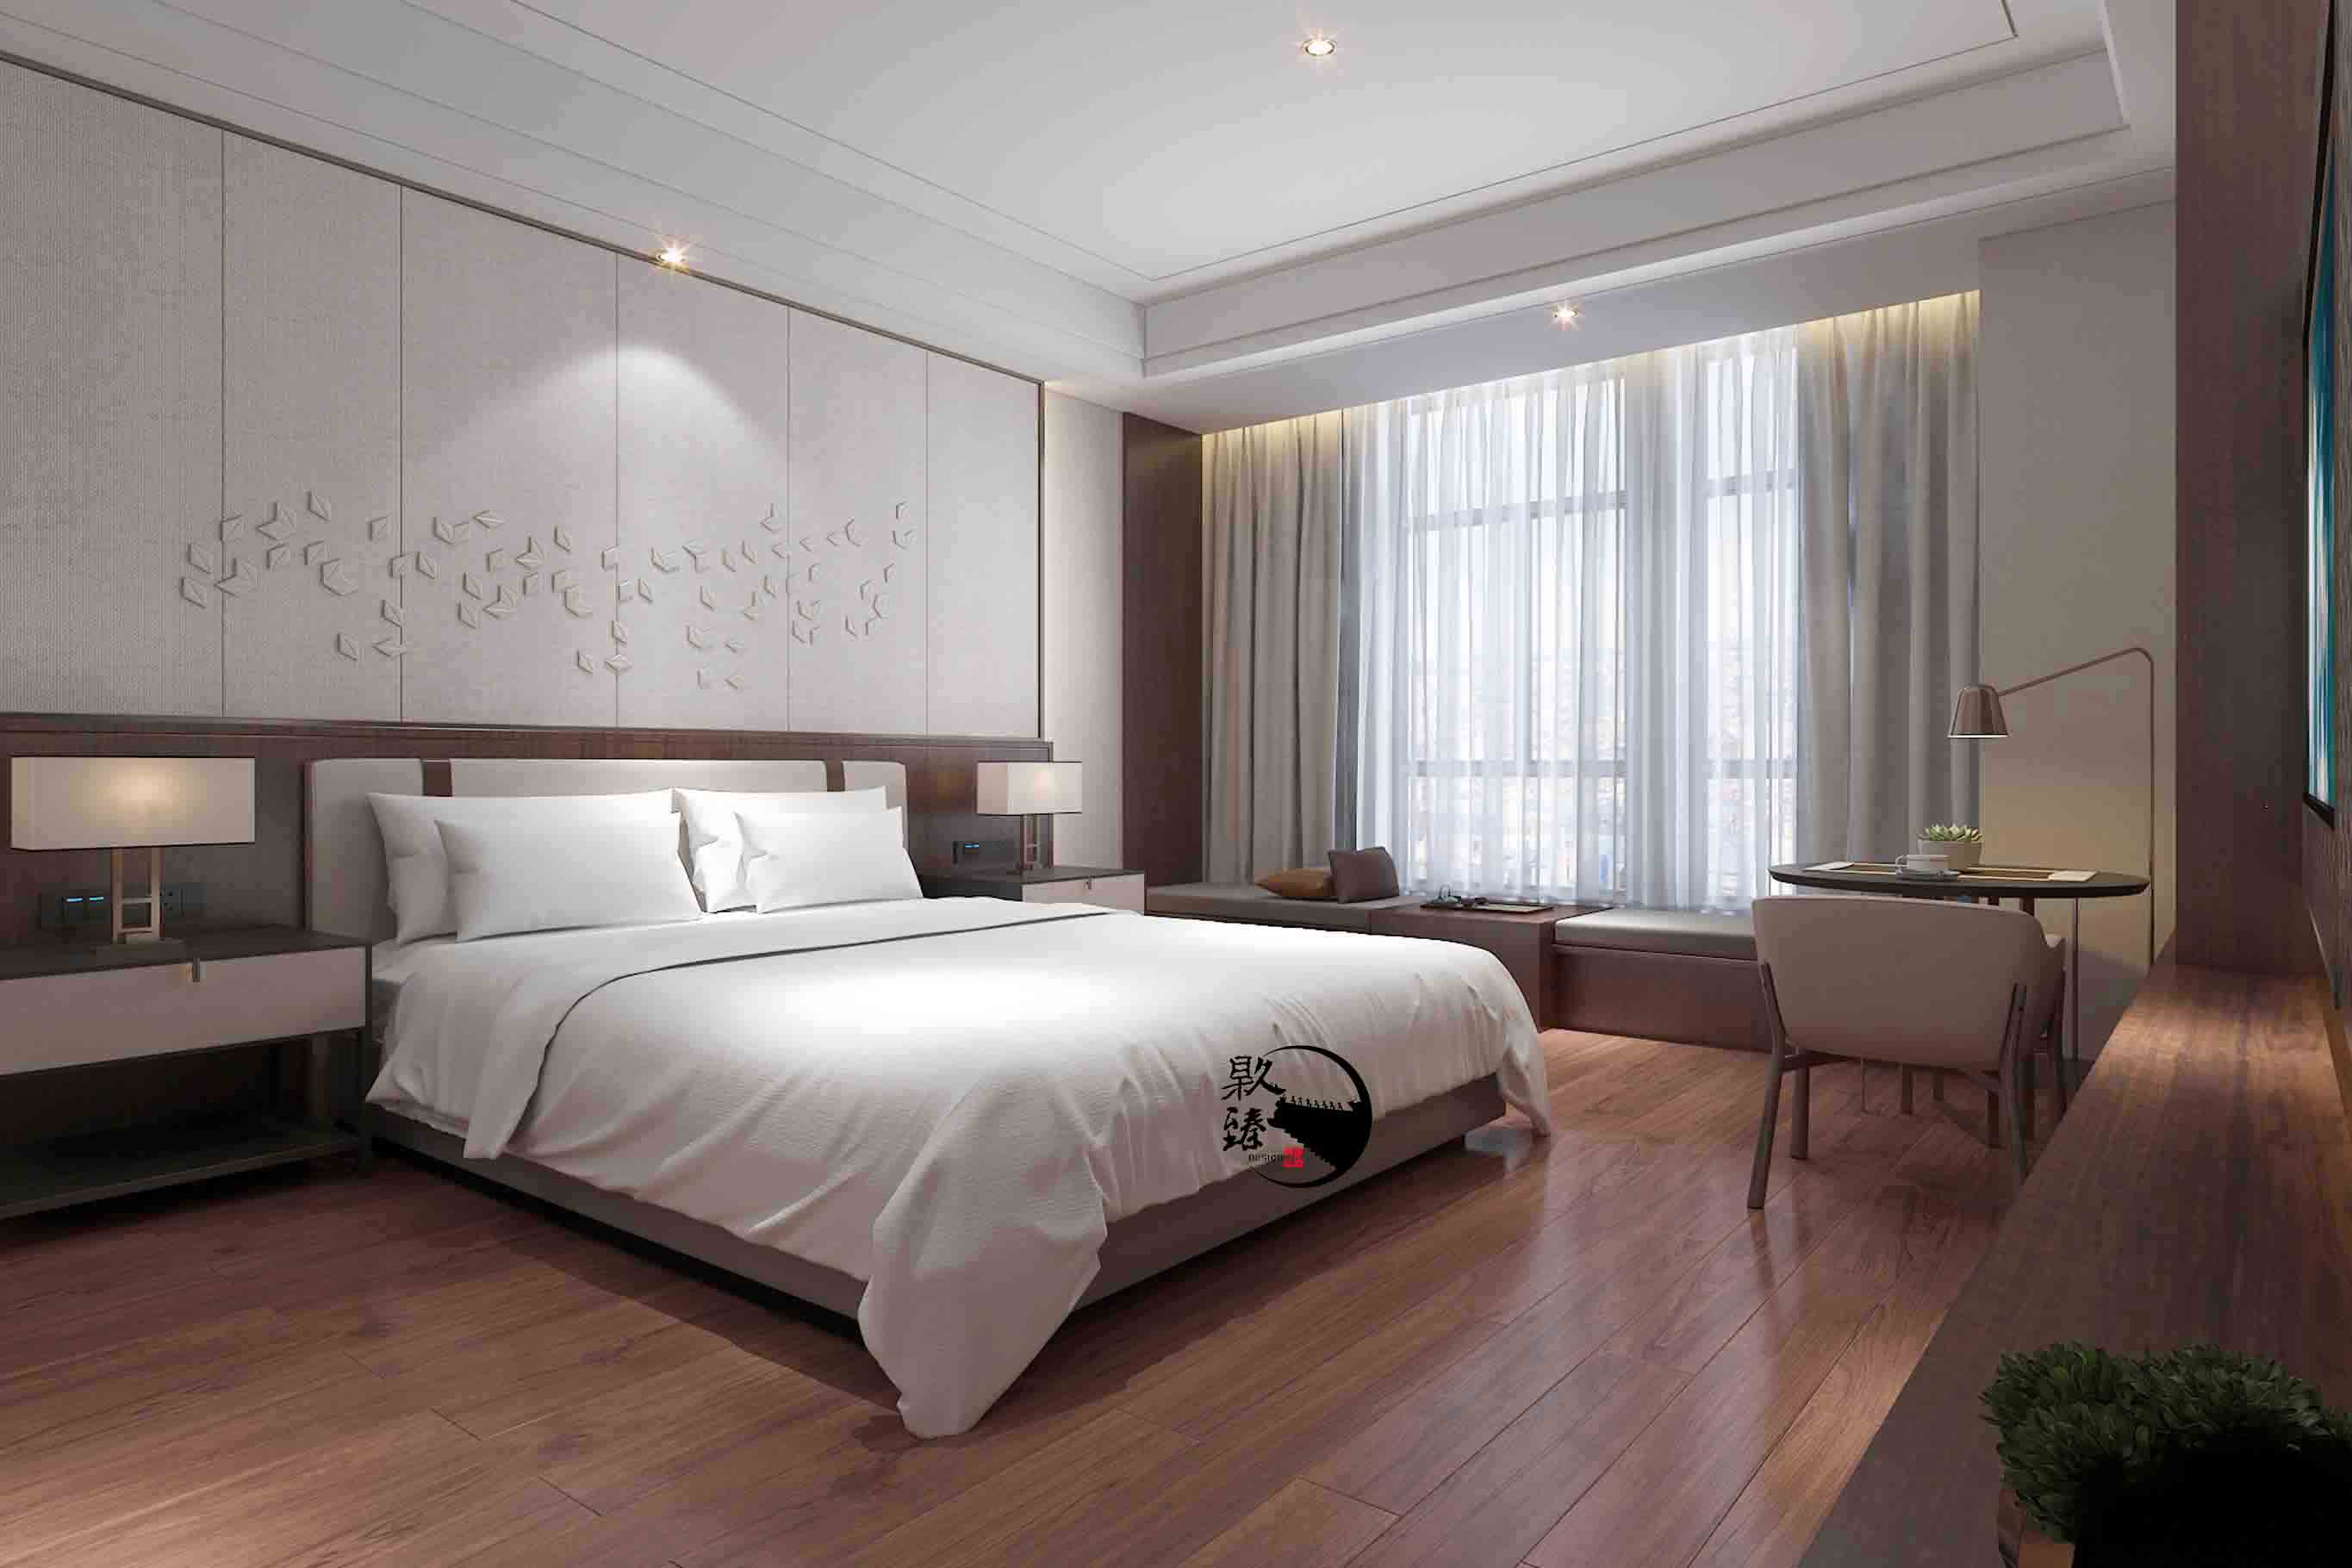 彭阳米素酒店设计|满足客户对舒适和安静的需求